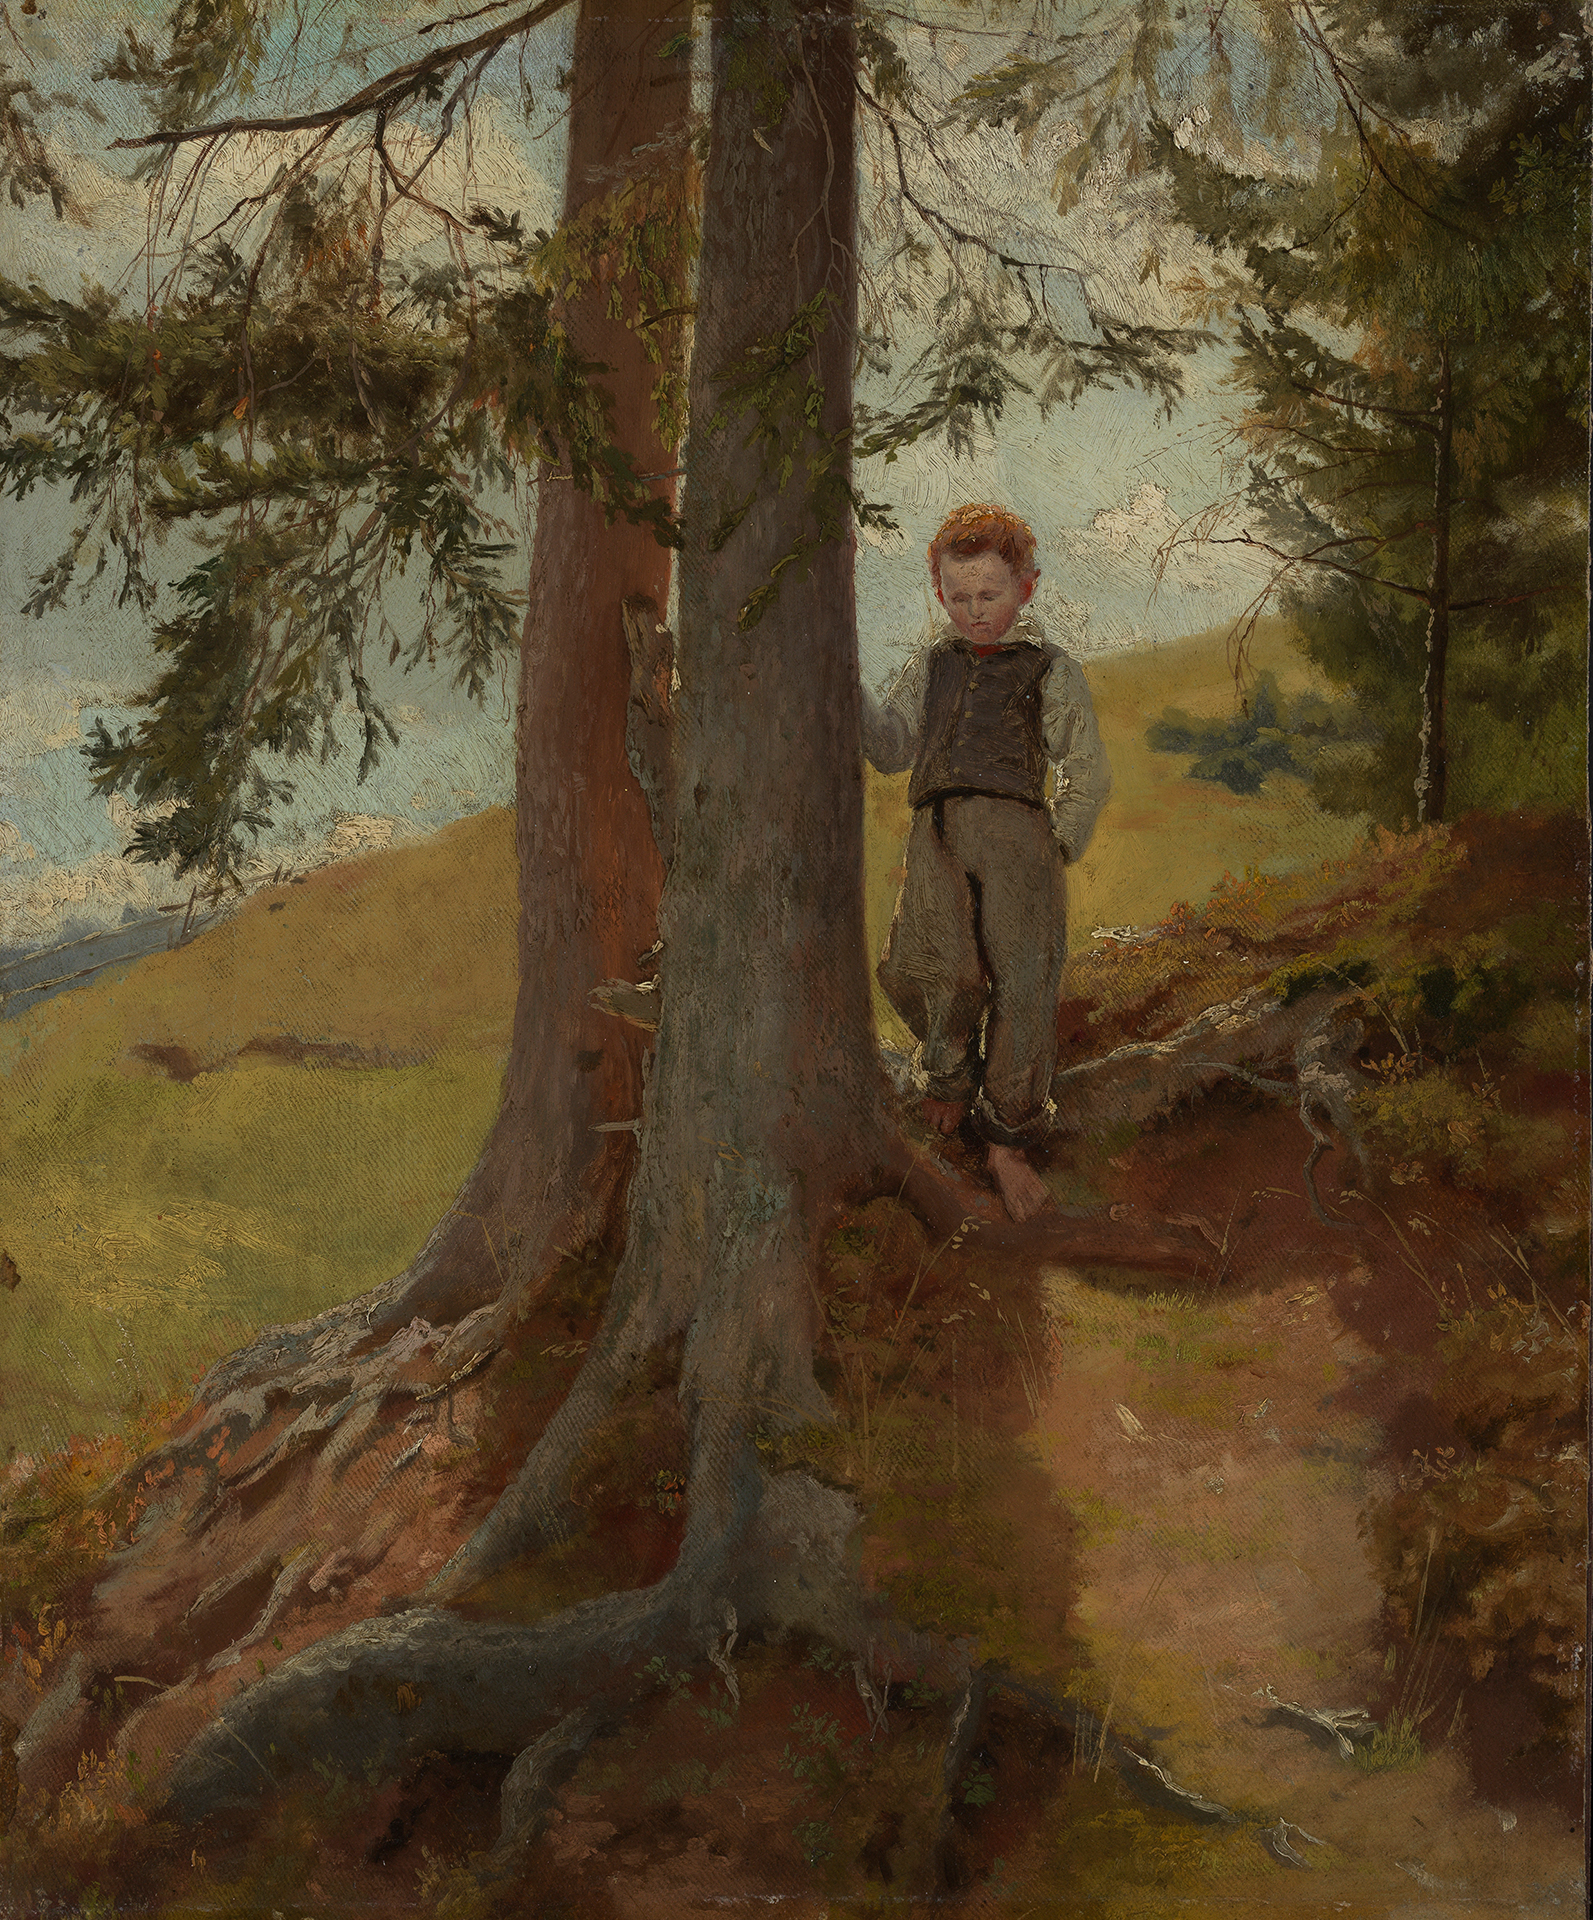 Hans Thoma zeigt ein junges Kind neben einem Baumstamm am Waldesrand stehend